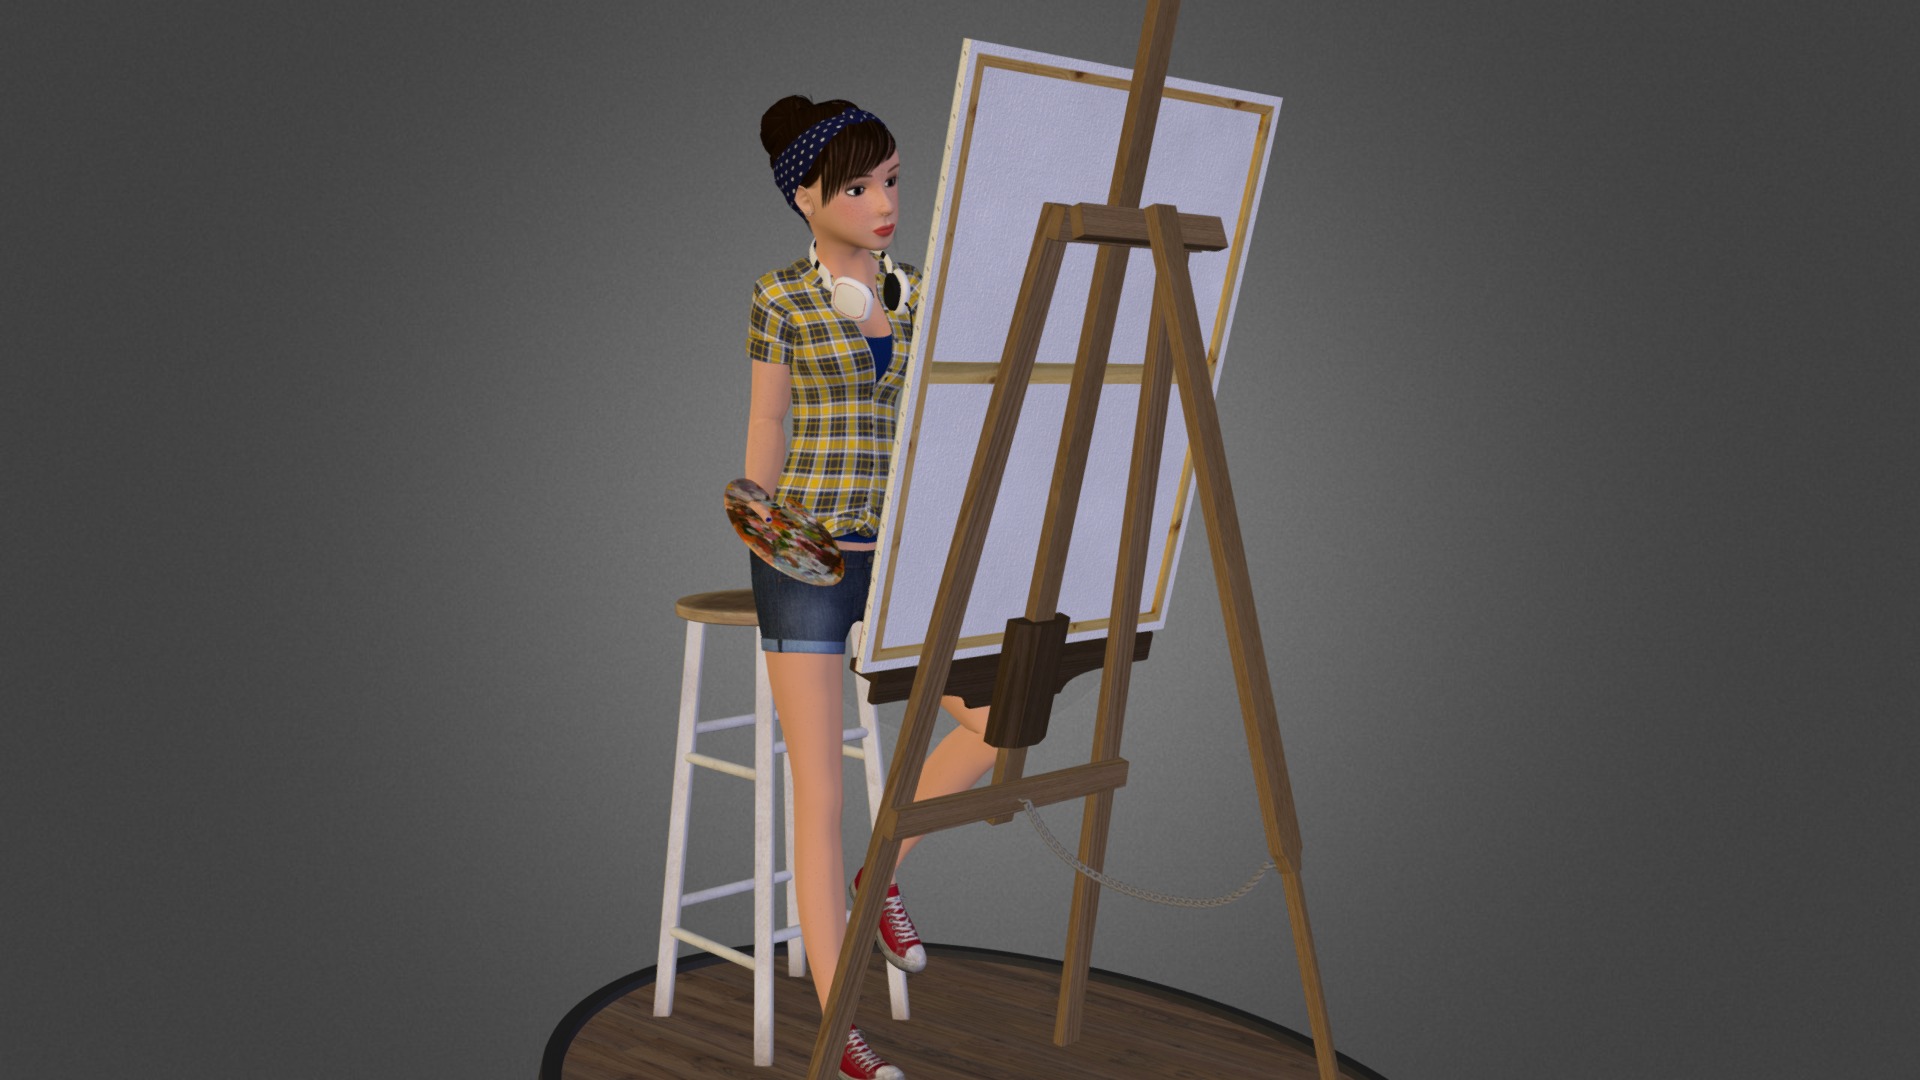 Emily The Painter - 3D model by henryh89 3d model